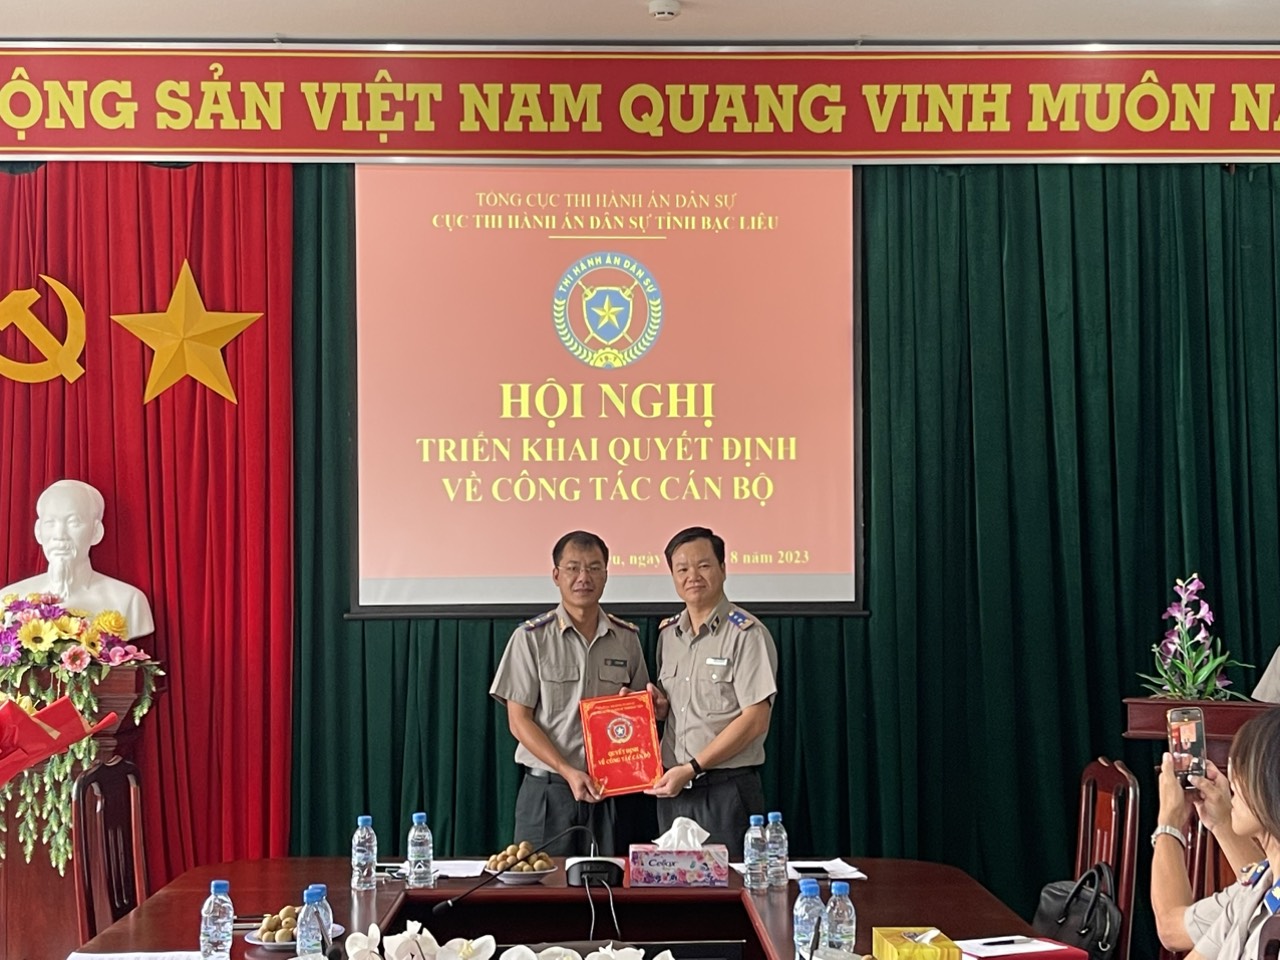 Biệt phái Phó Cục trưởng Cục THADS tỉnh Nam Định đến công tác tại Cục Thi hành án dân sự tỉnh Bạc Liêu